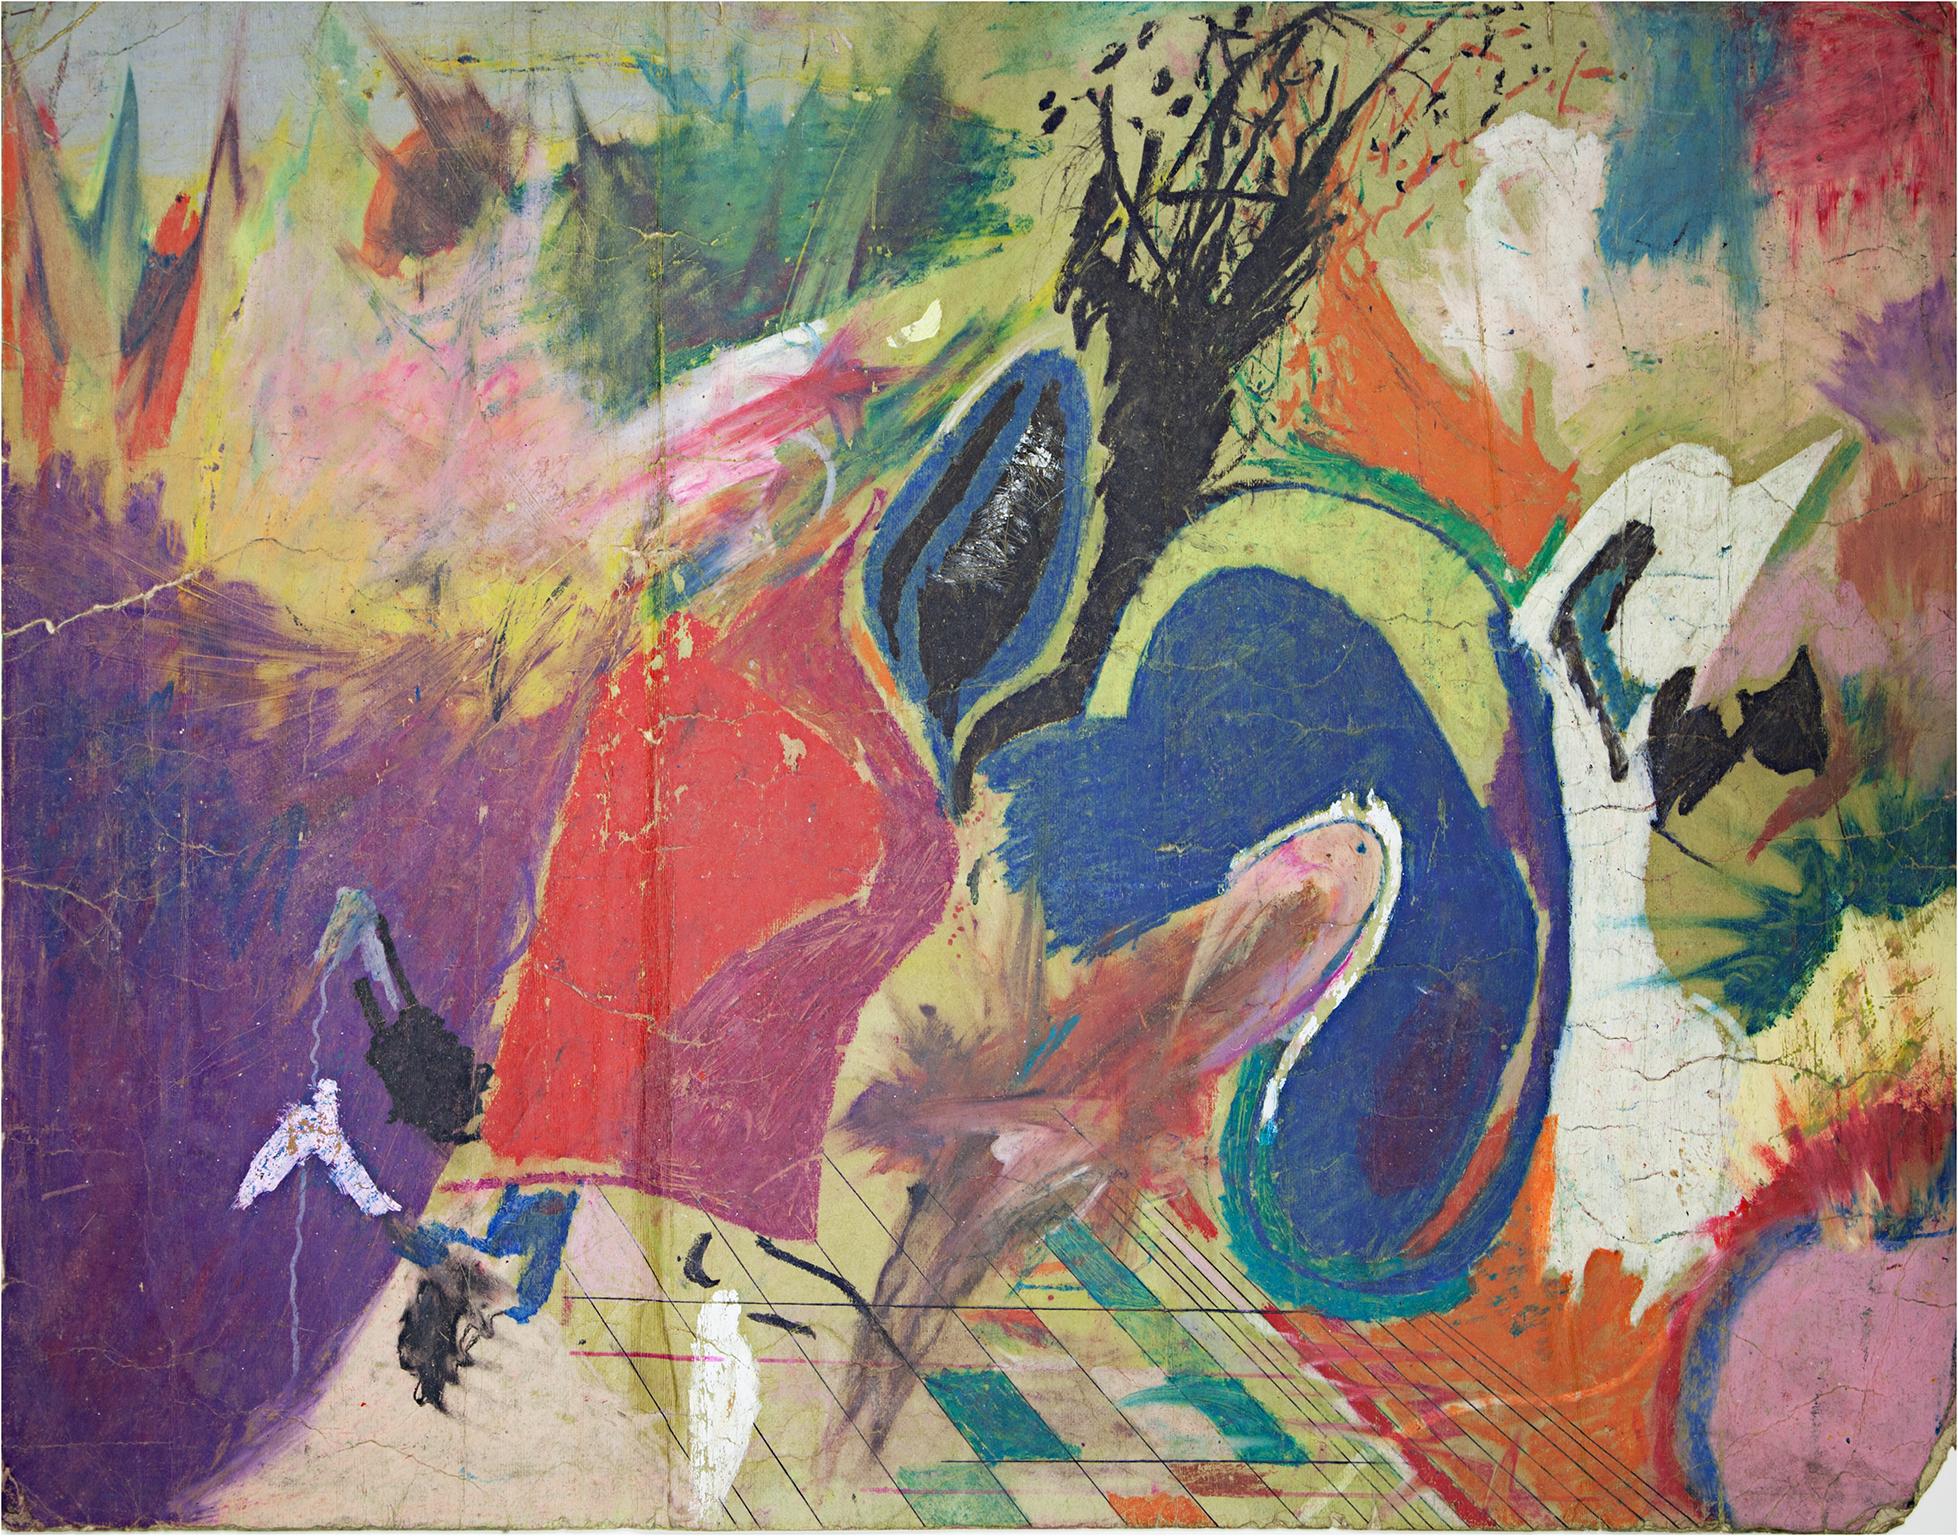 "La nature des choses" est un dessin original au pastel à l'huile sur papier de Reginald K. Gee. L'artiste a apposé ses initiales au dos de l'œuvre. Cette œuvre présente une variété de techniques abstraites - géométriques, expressionnistes, etc. -